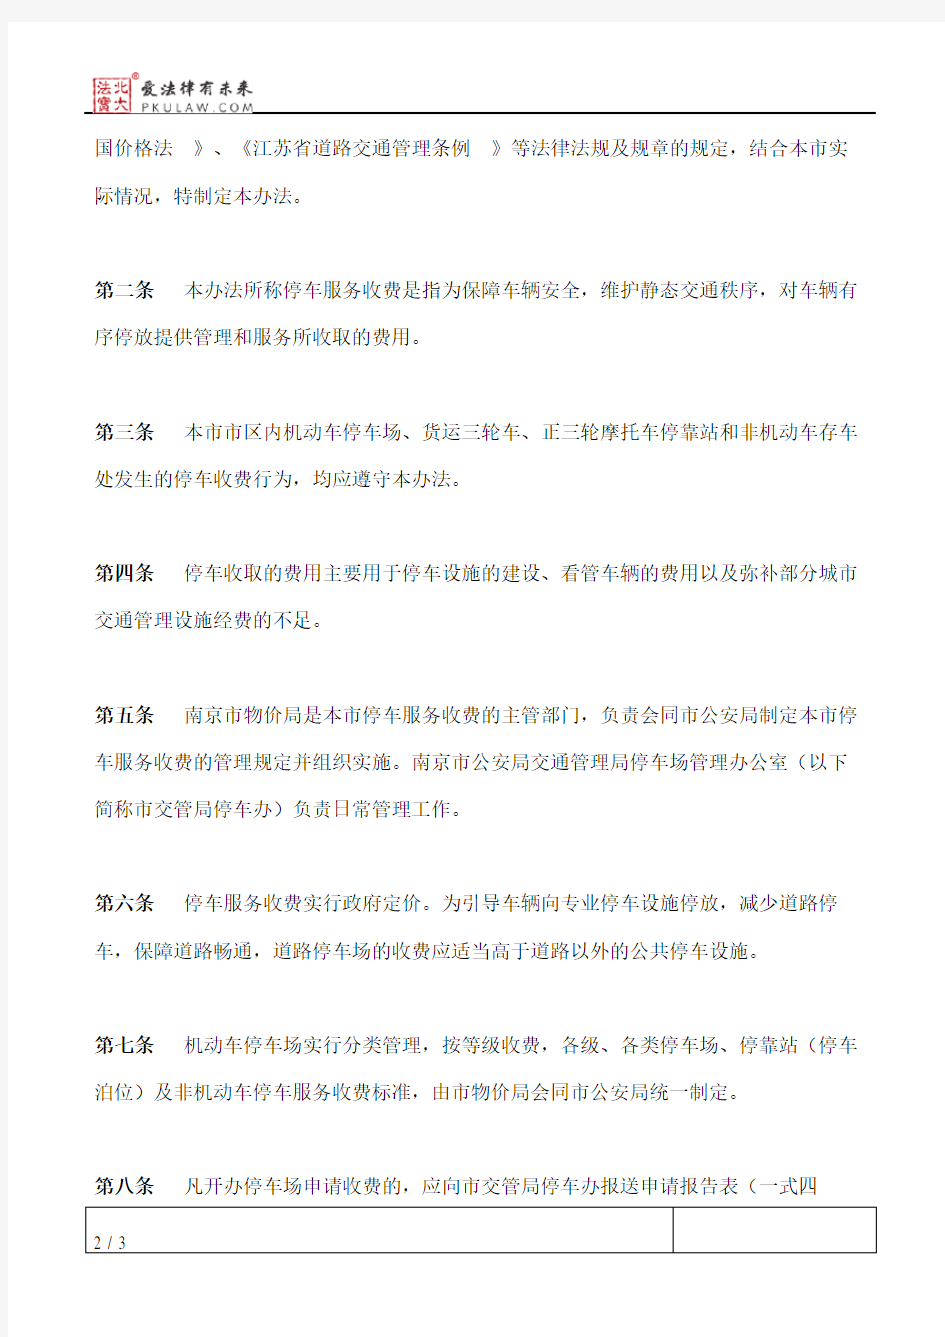 南京市物价局、市公安局关于印发《南京市停车服务收费管理办法》的通知